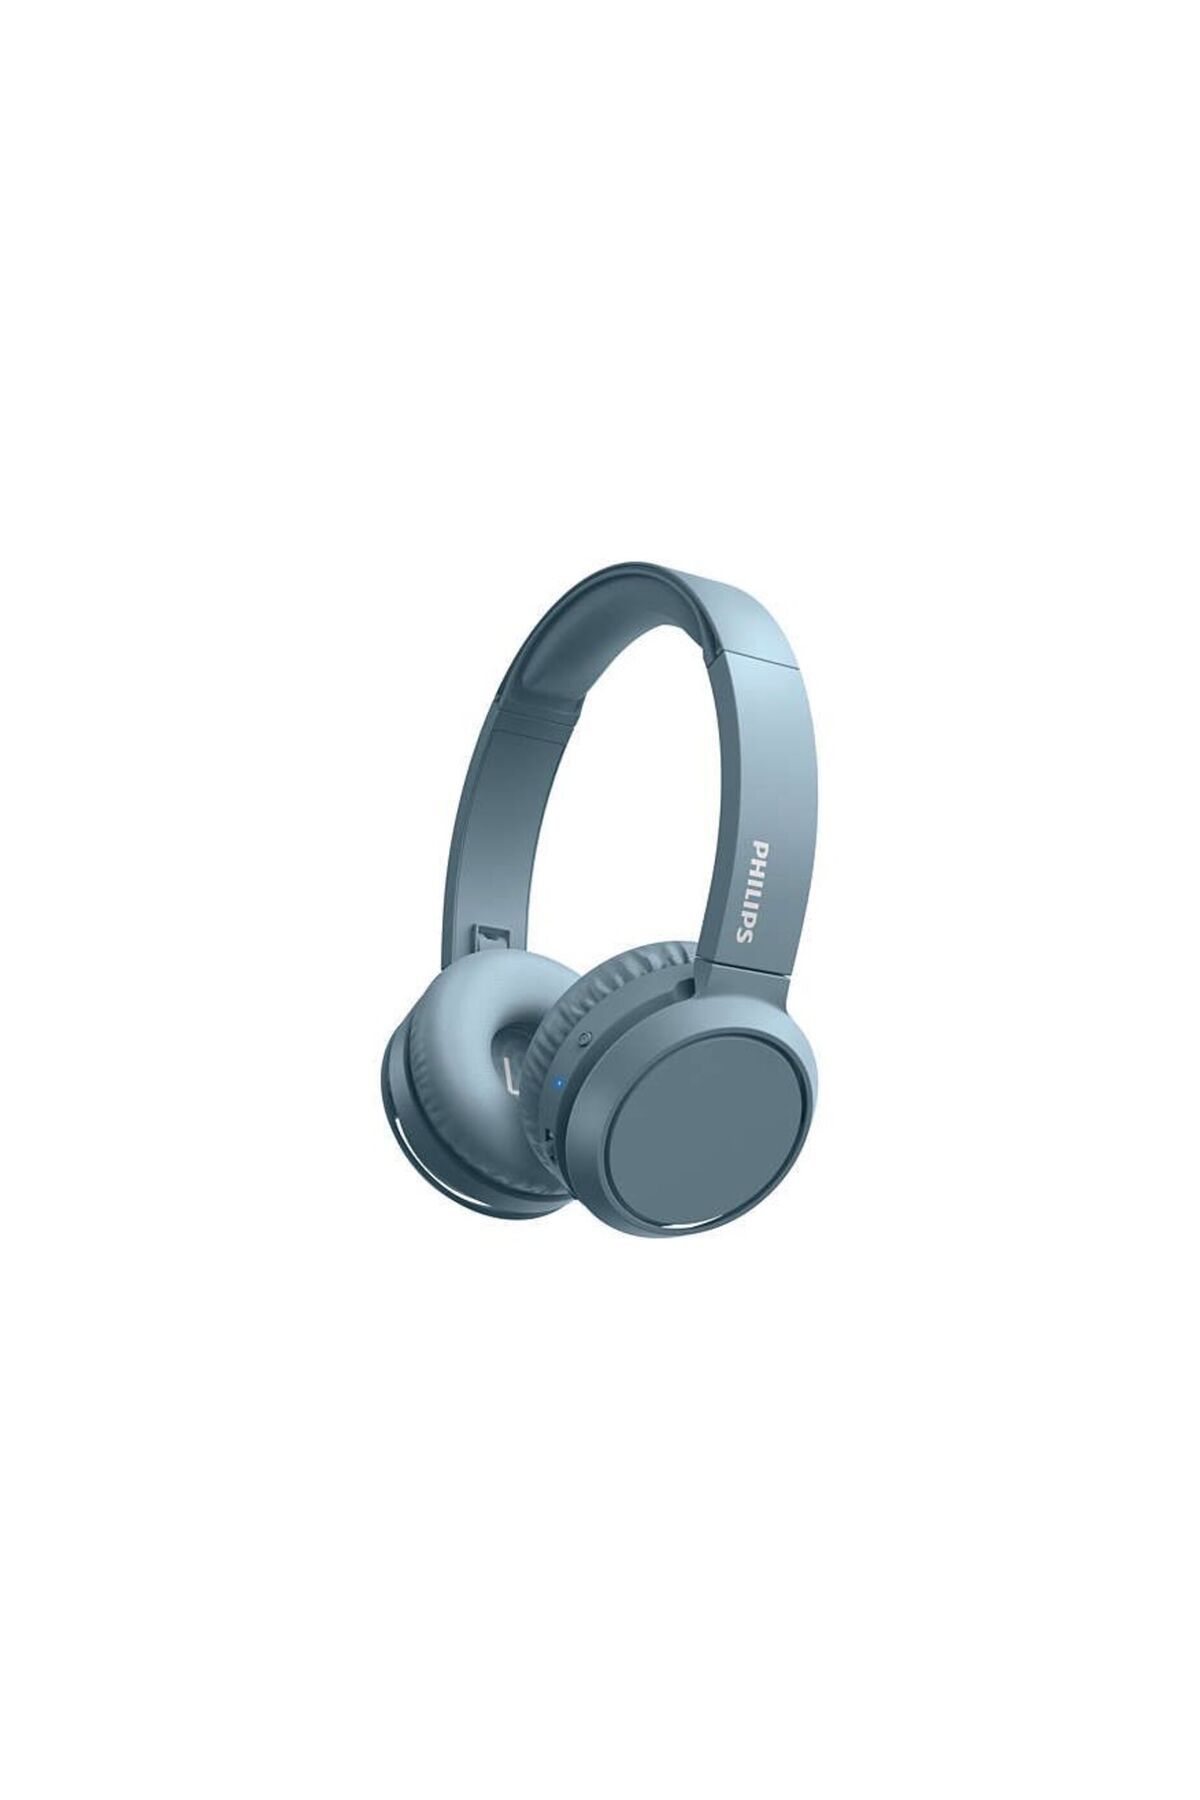 Philips Tah4205wt Kablosuz Kulak Üstü Bluetooth Kulaklık - 29 Saat